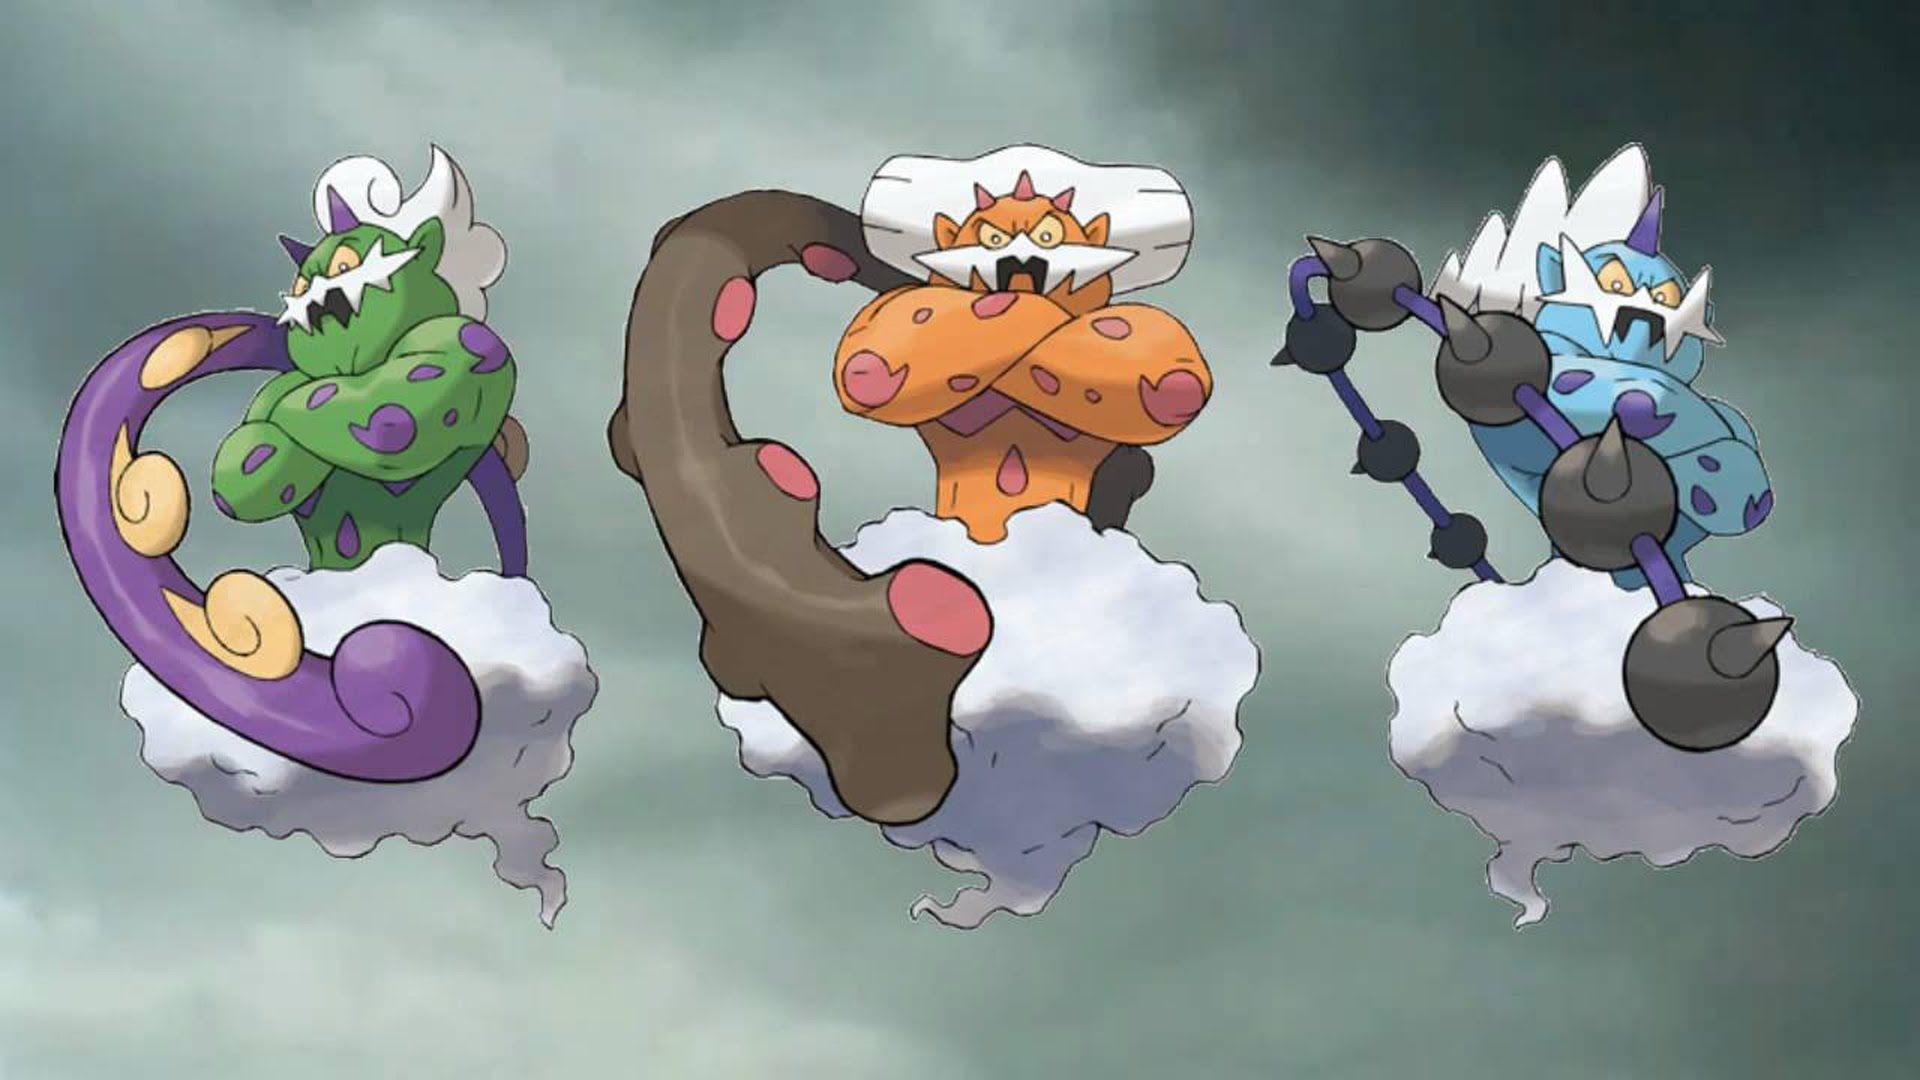 Pokémon Go terá evento de Fogo e Gelo seguido por modos multiplayer